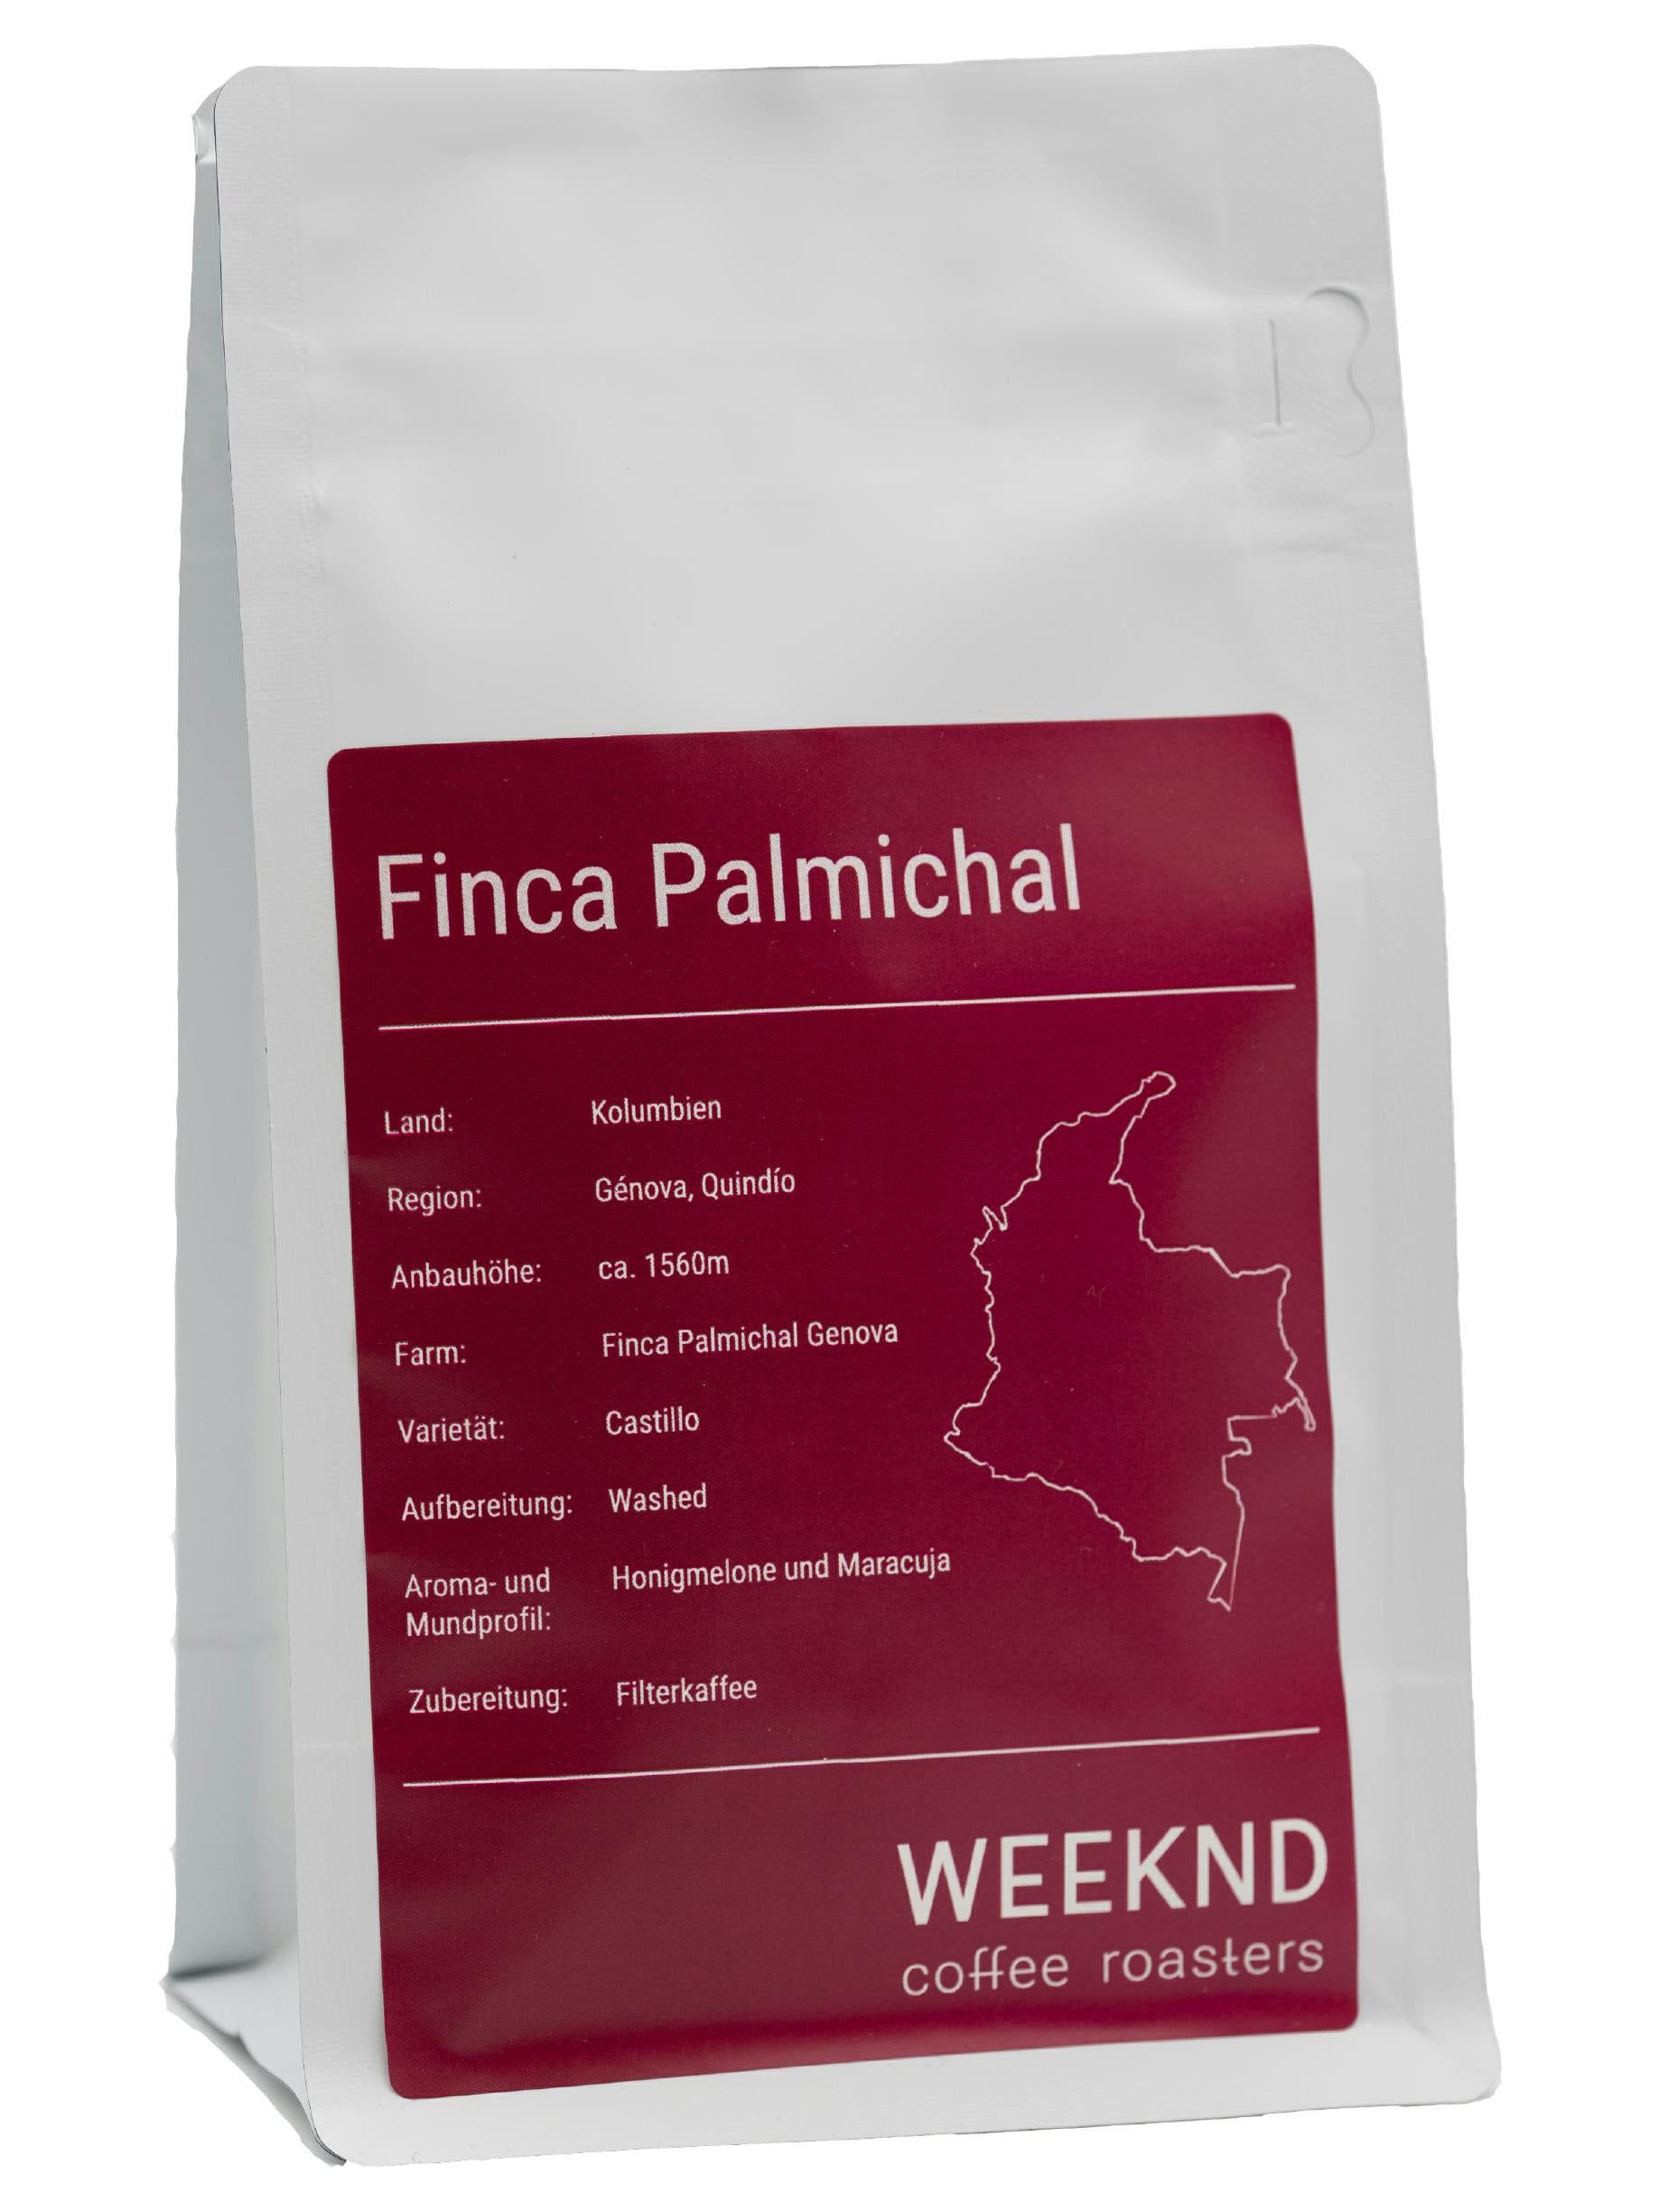 Finca Palmichal, eine renommierte Kaffeefarm in Kolumbien, die für ihre sorgfältig angebauten und vollmundigen Kaffeesorten bekannt ist - erlebe den Geschmack Kolumbiens in unserer Kaffeerösterei